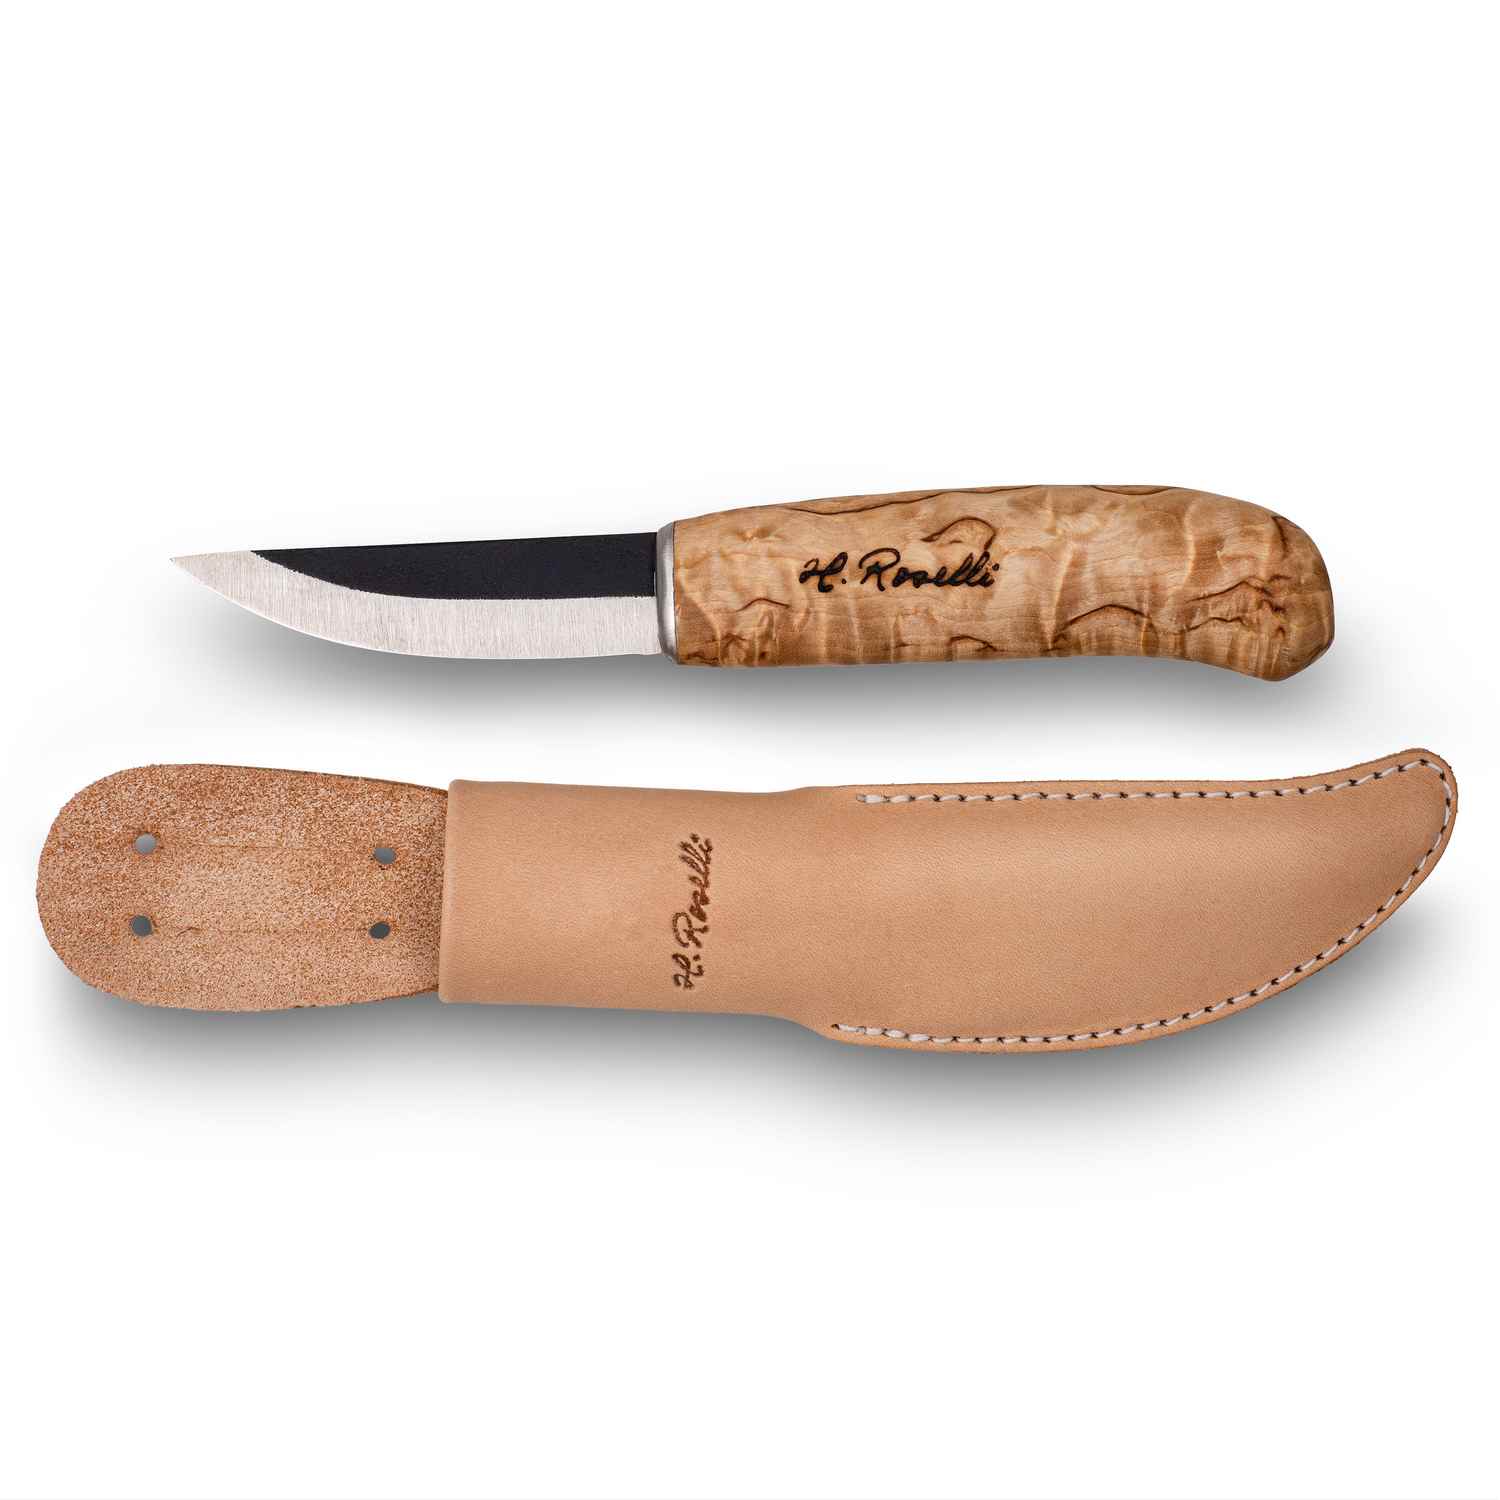 Roselli R110 "Carpenter Knife"